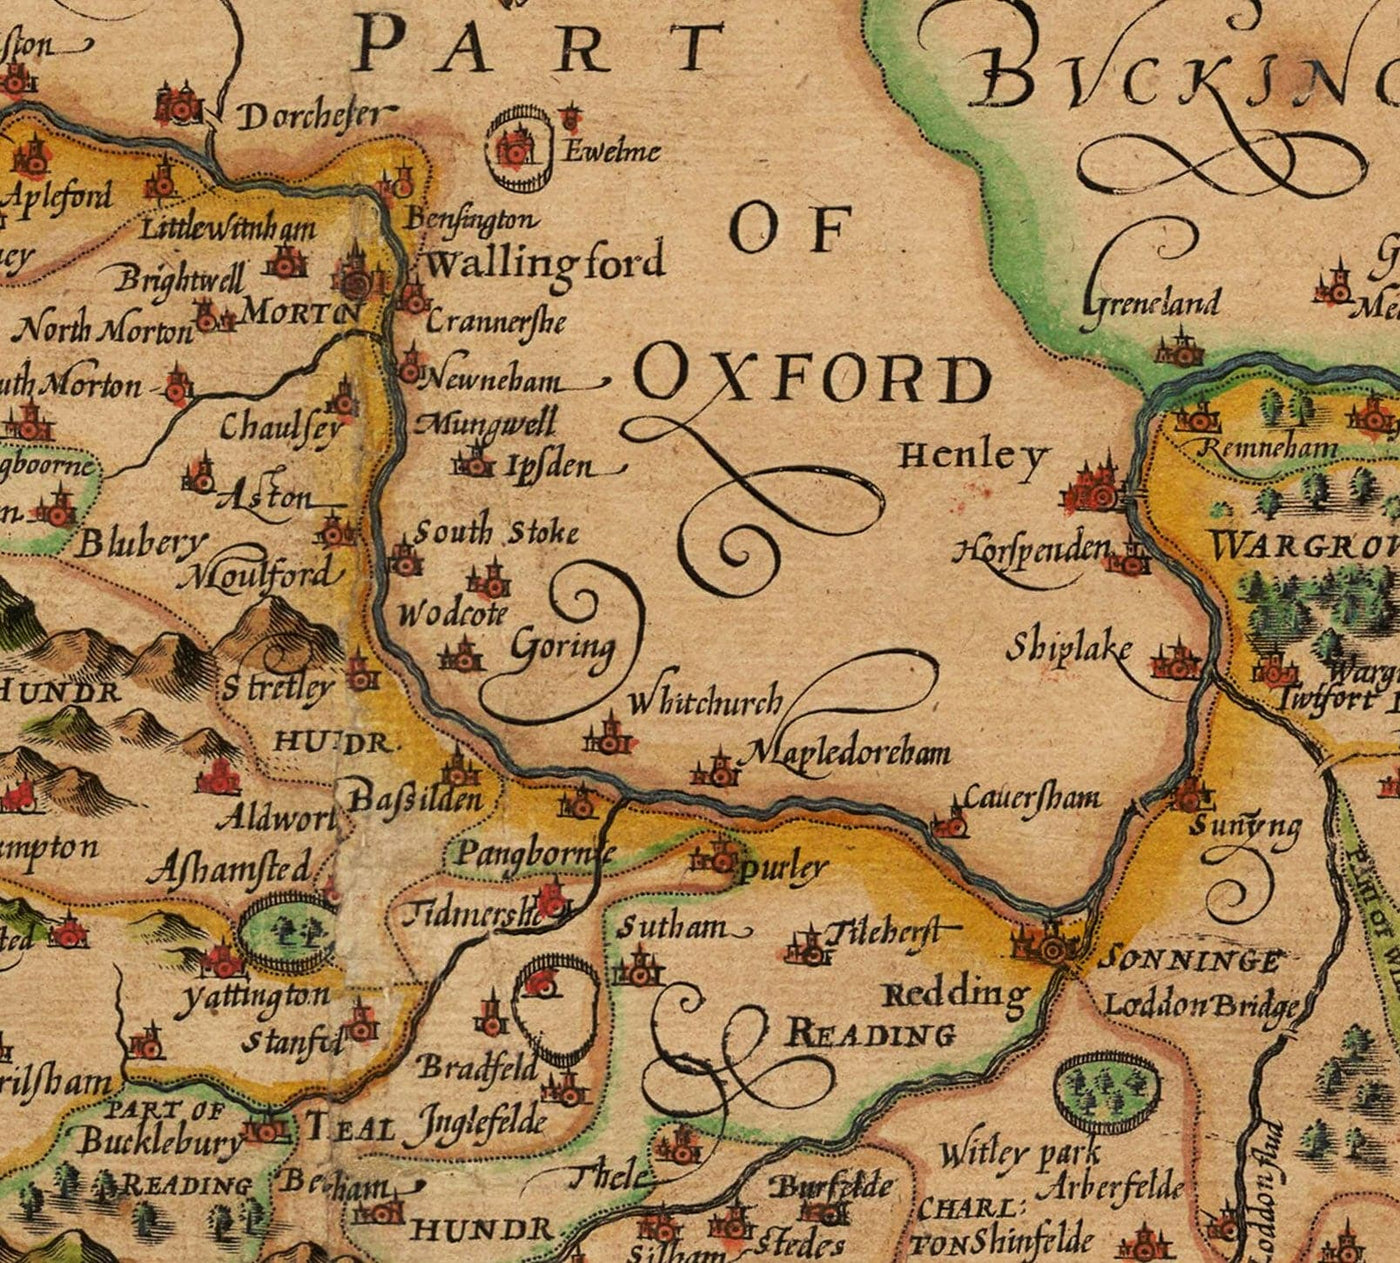 Old Map of Berkshire, 1611, John Speed - Reading, Slough, Bracknell, Maidenhead